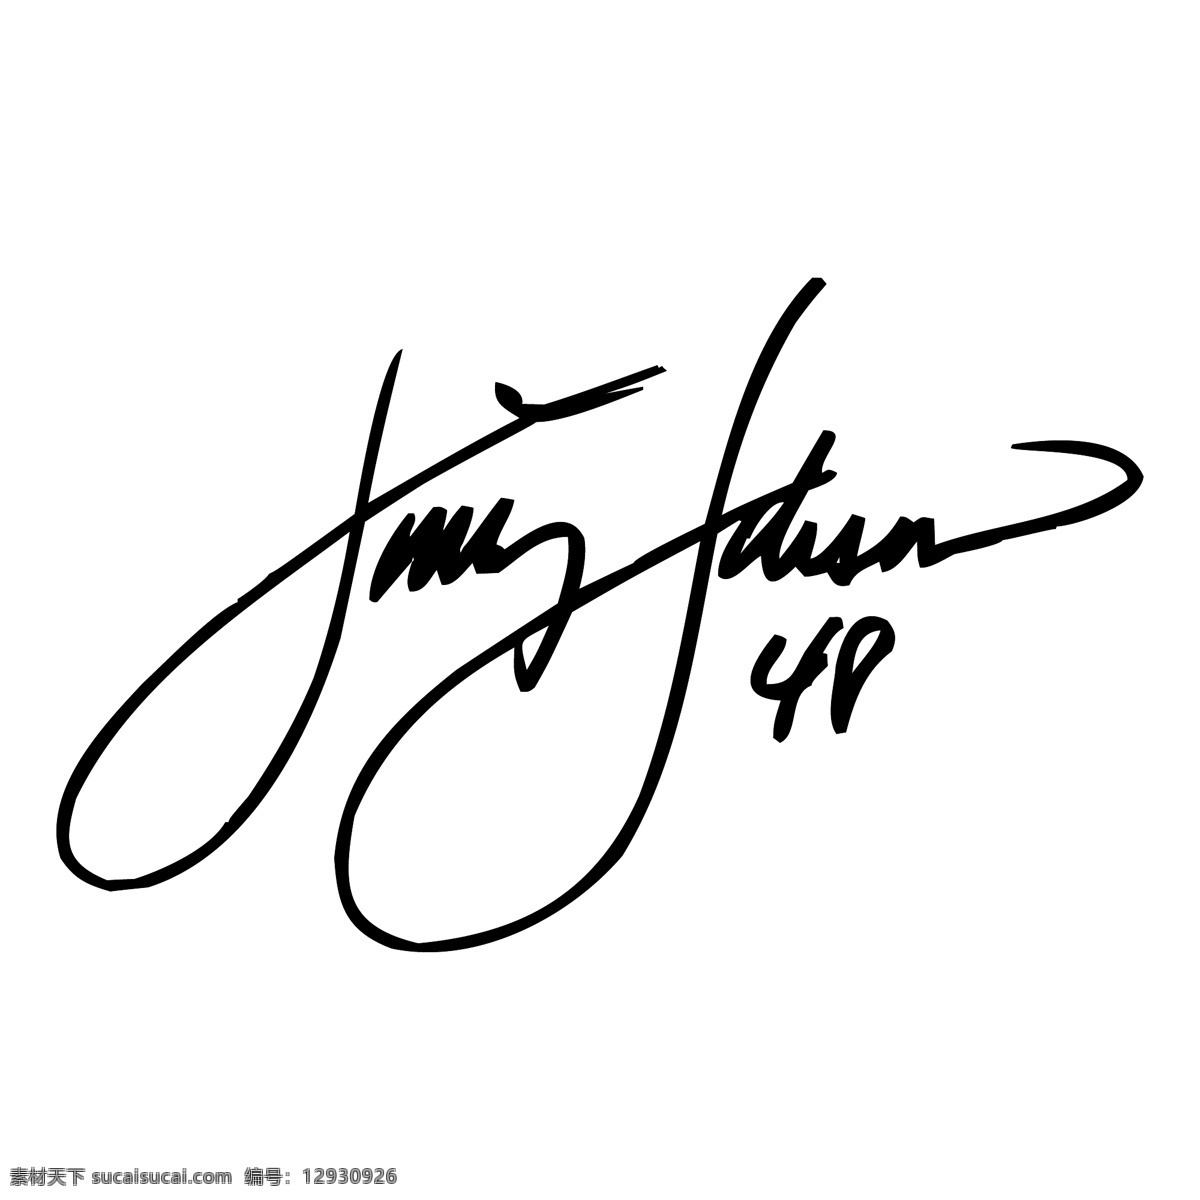 免费 吉米 约翰逊 签名 标识 白色